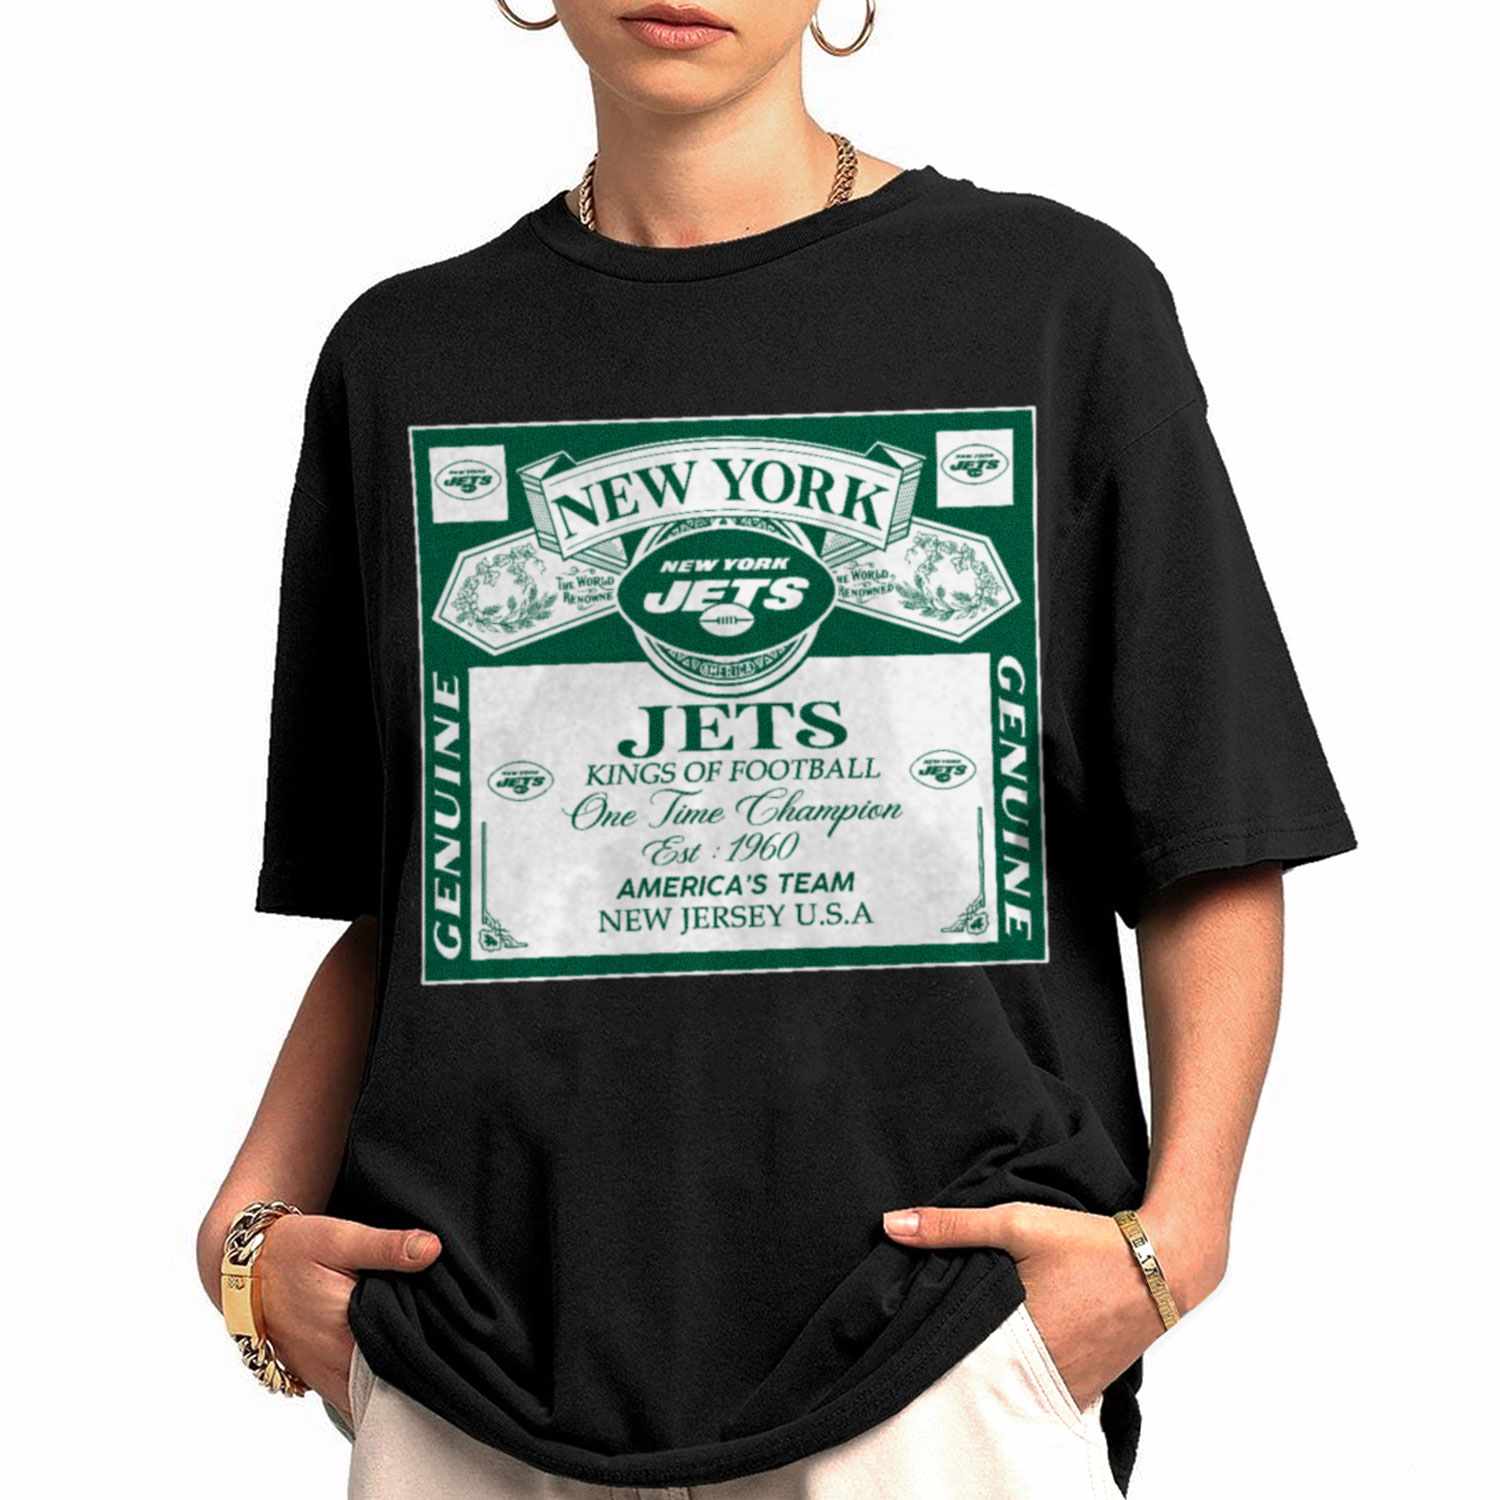 jets shirt women's